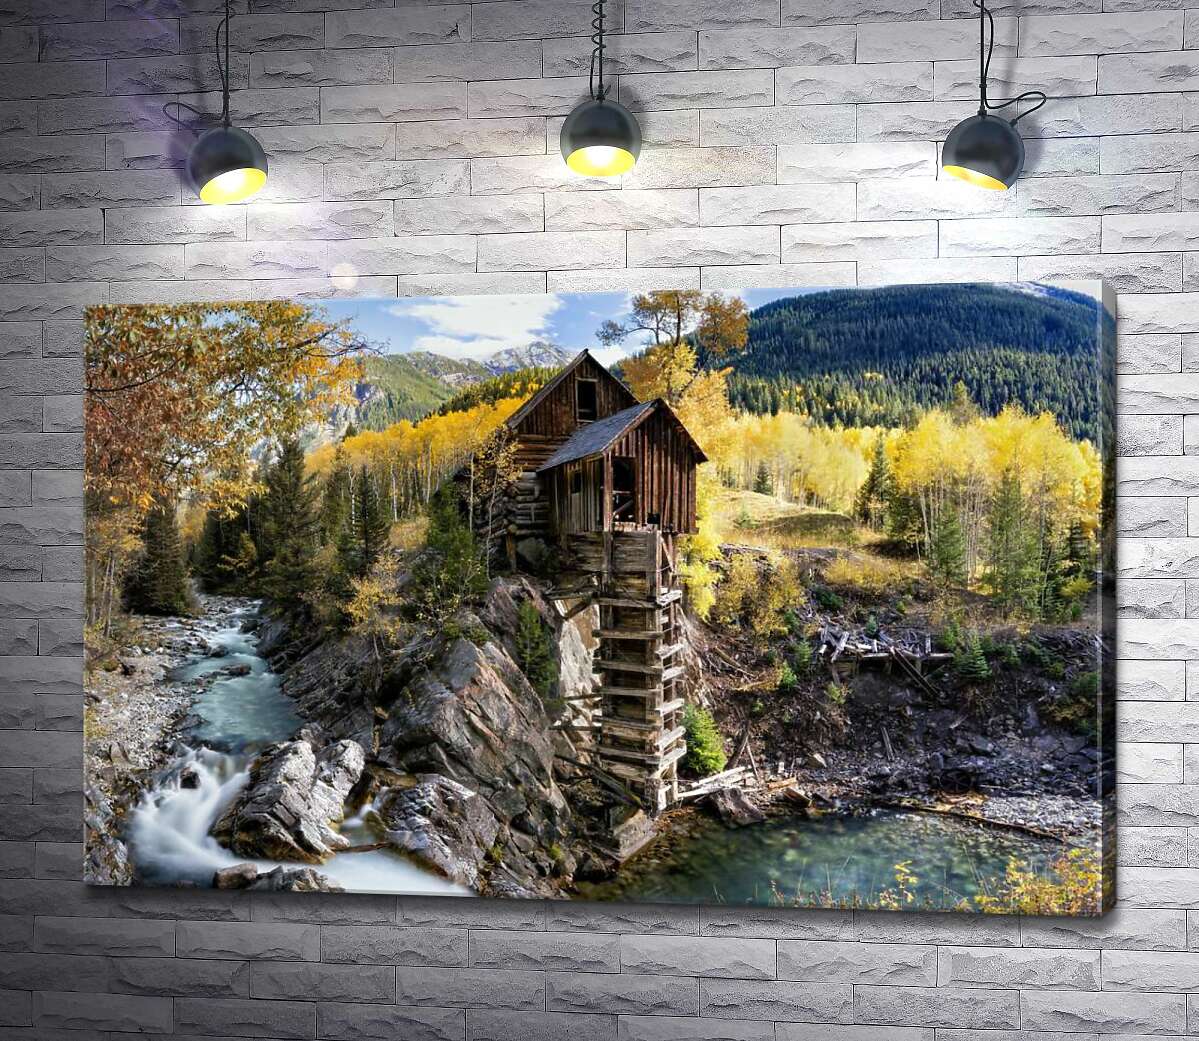 картина Кришталевий млин (Crystal Mill) серед осінніх гір штату Колорадо